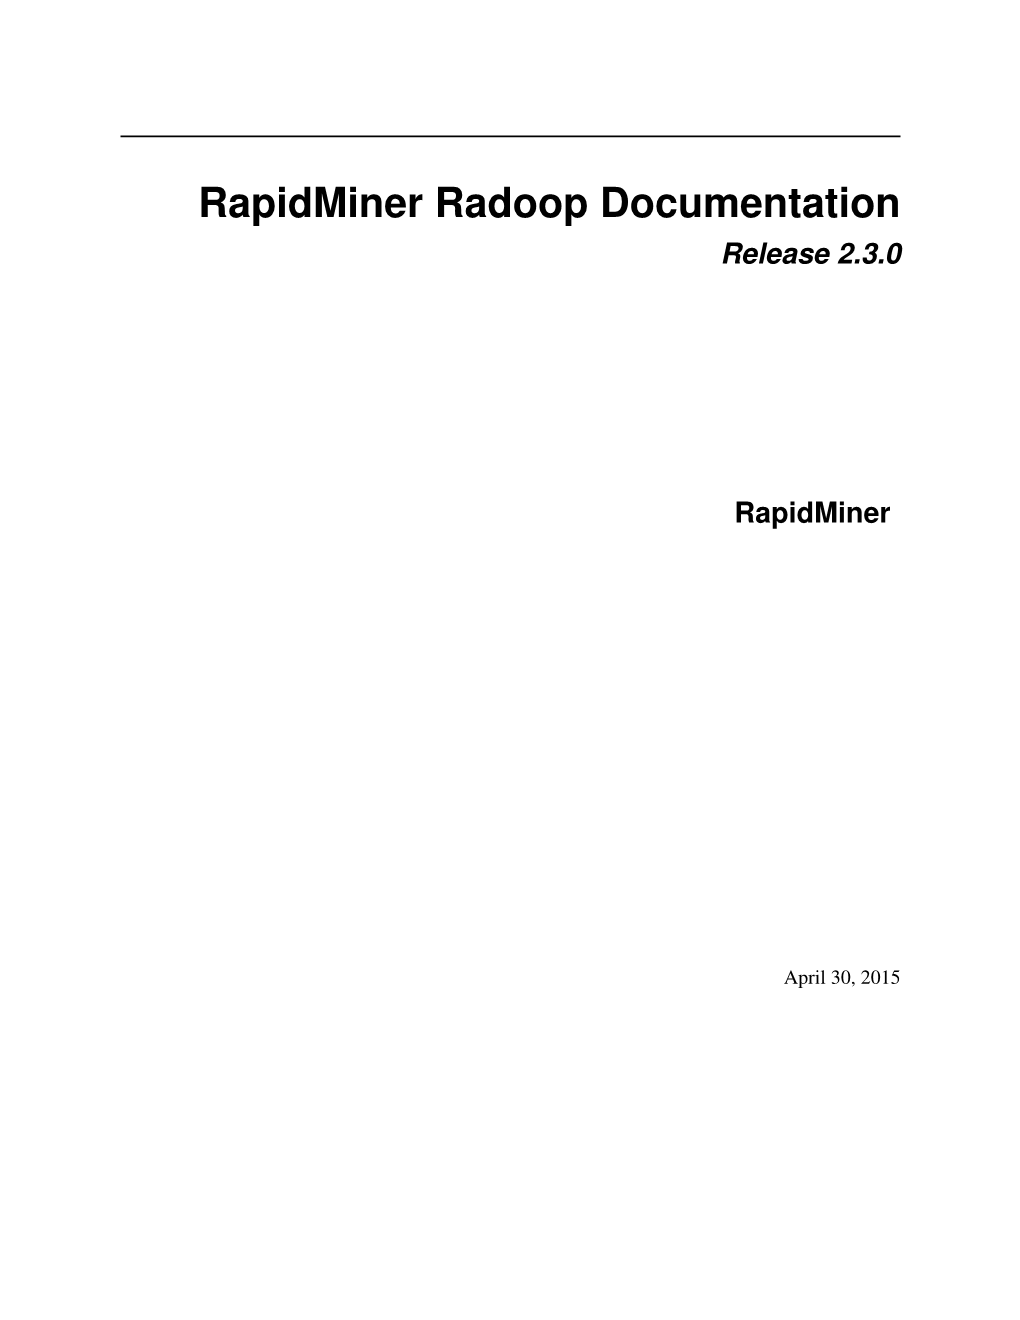 Rapidminer Radoop Documentation Release 2.3.0